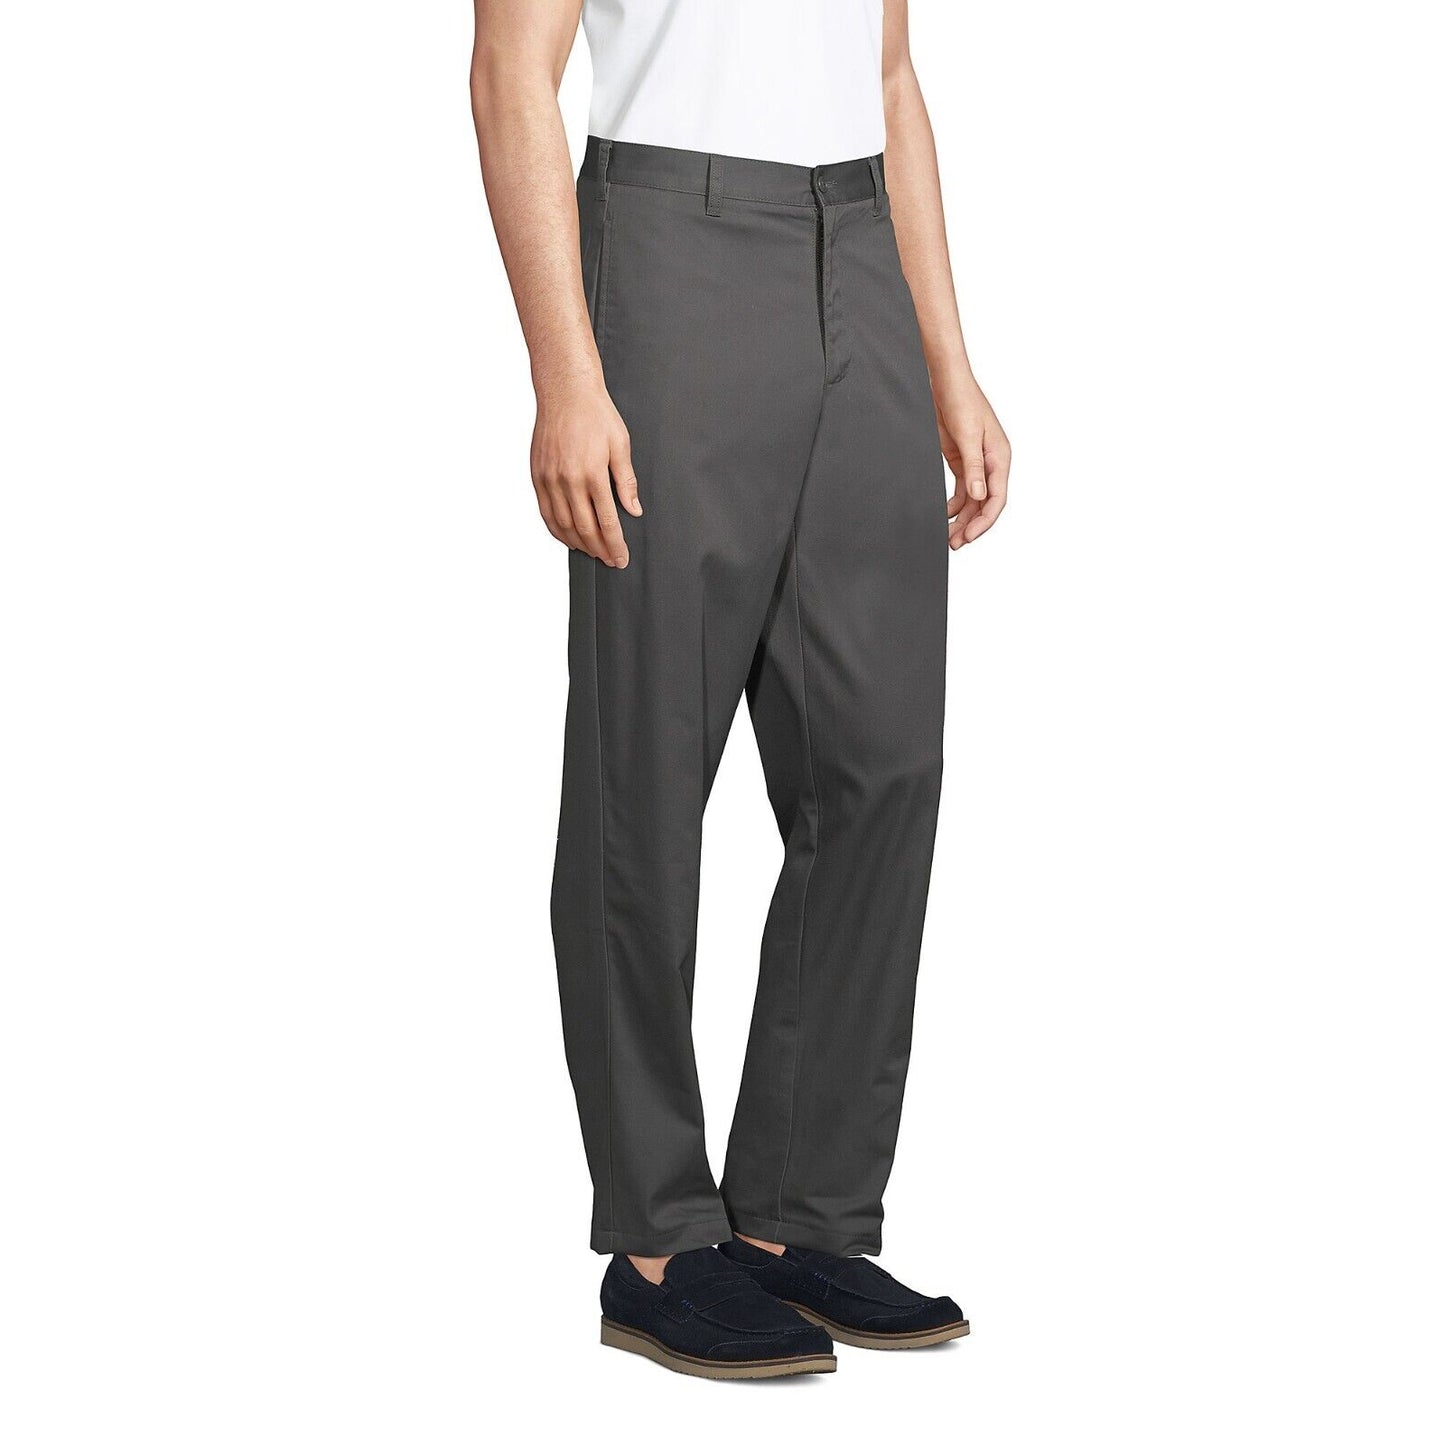 Men's Blend Plain Front Chino Pants Size 30